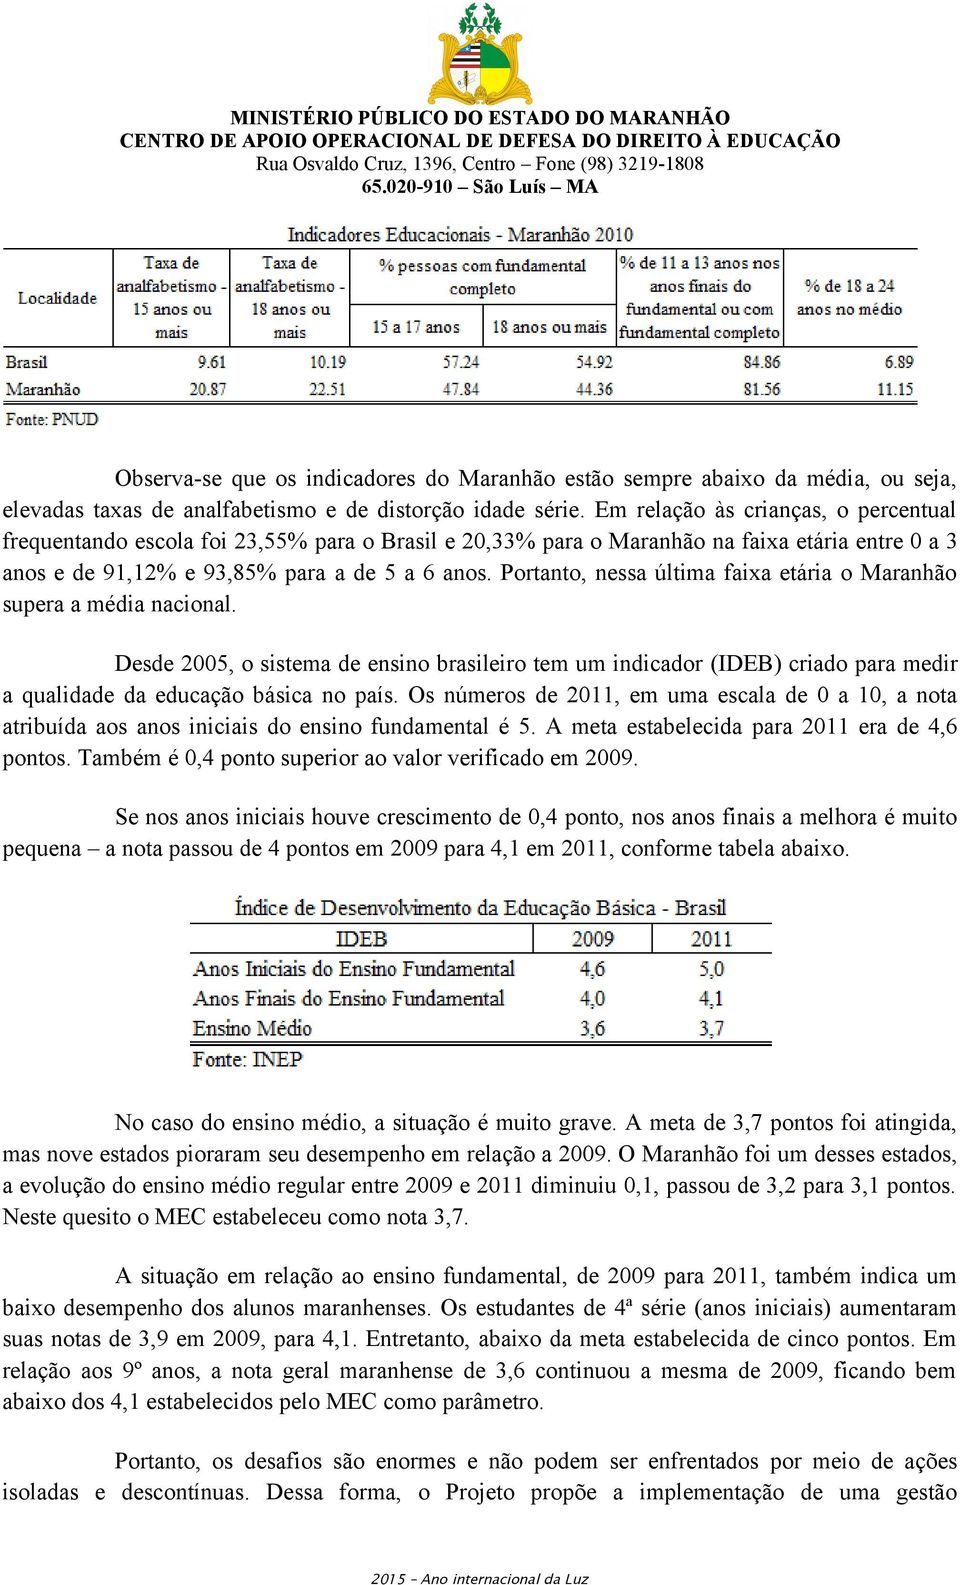 Portanto, nessa última faixa etária o Maranhão supera a média nacional. Desde 2005, o sistema de ensino brasileiro tem um indicador (IDEB) criado para medir a qualidade da educação básica no país.